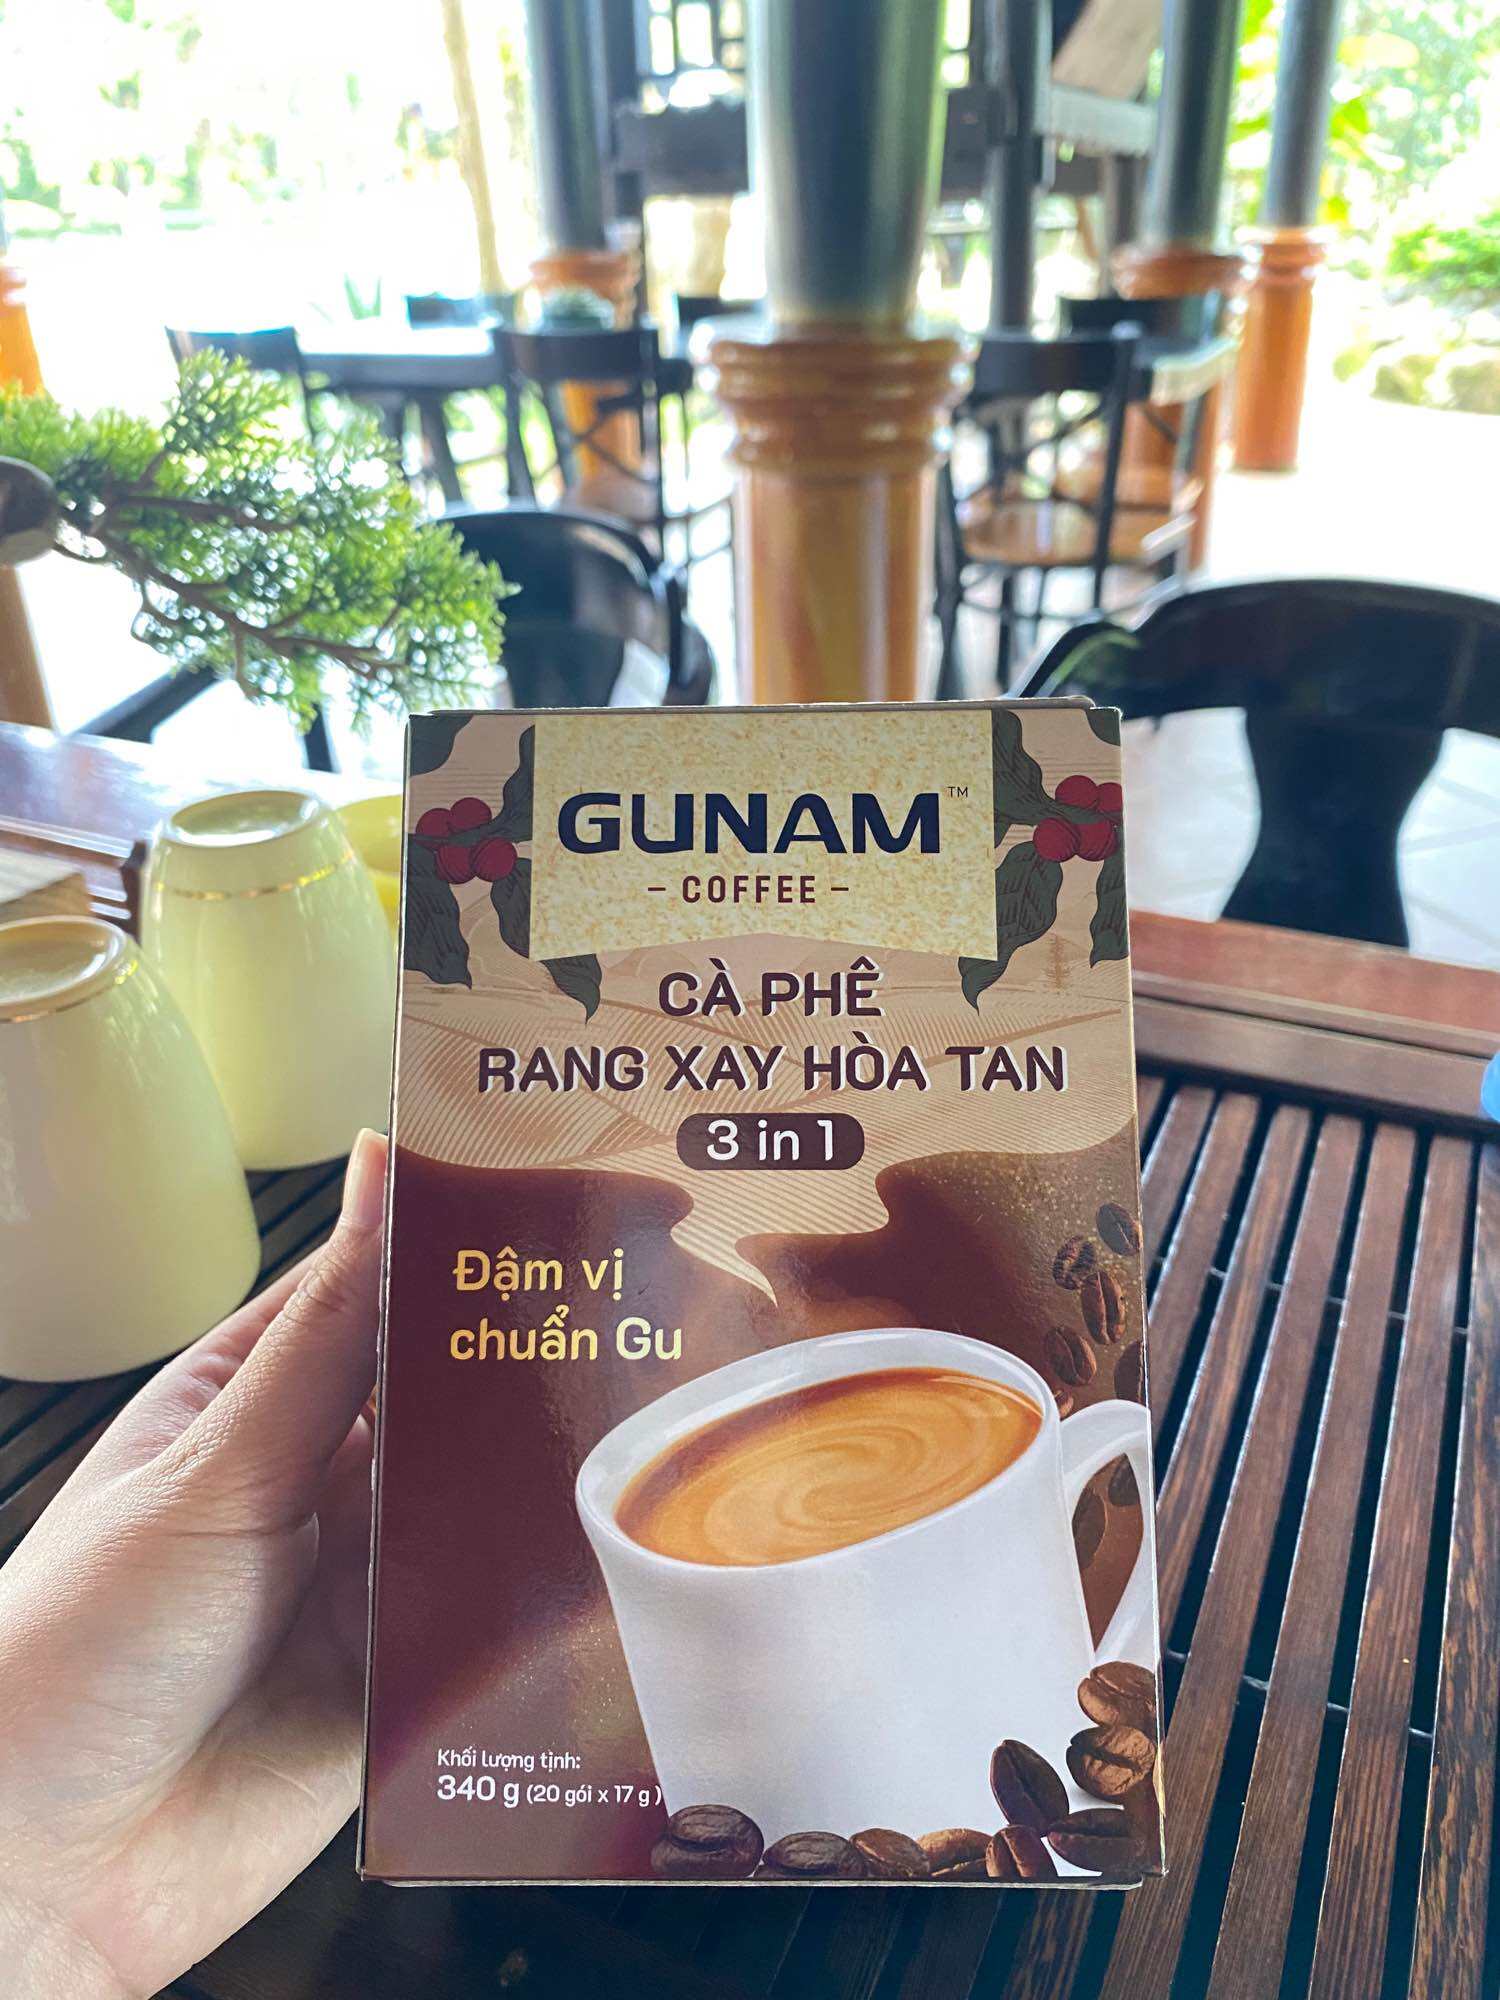 Cà phê rang xay hoà tan chuẩn gu Việt Cà phê